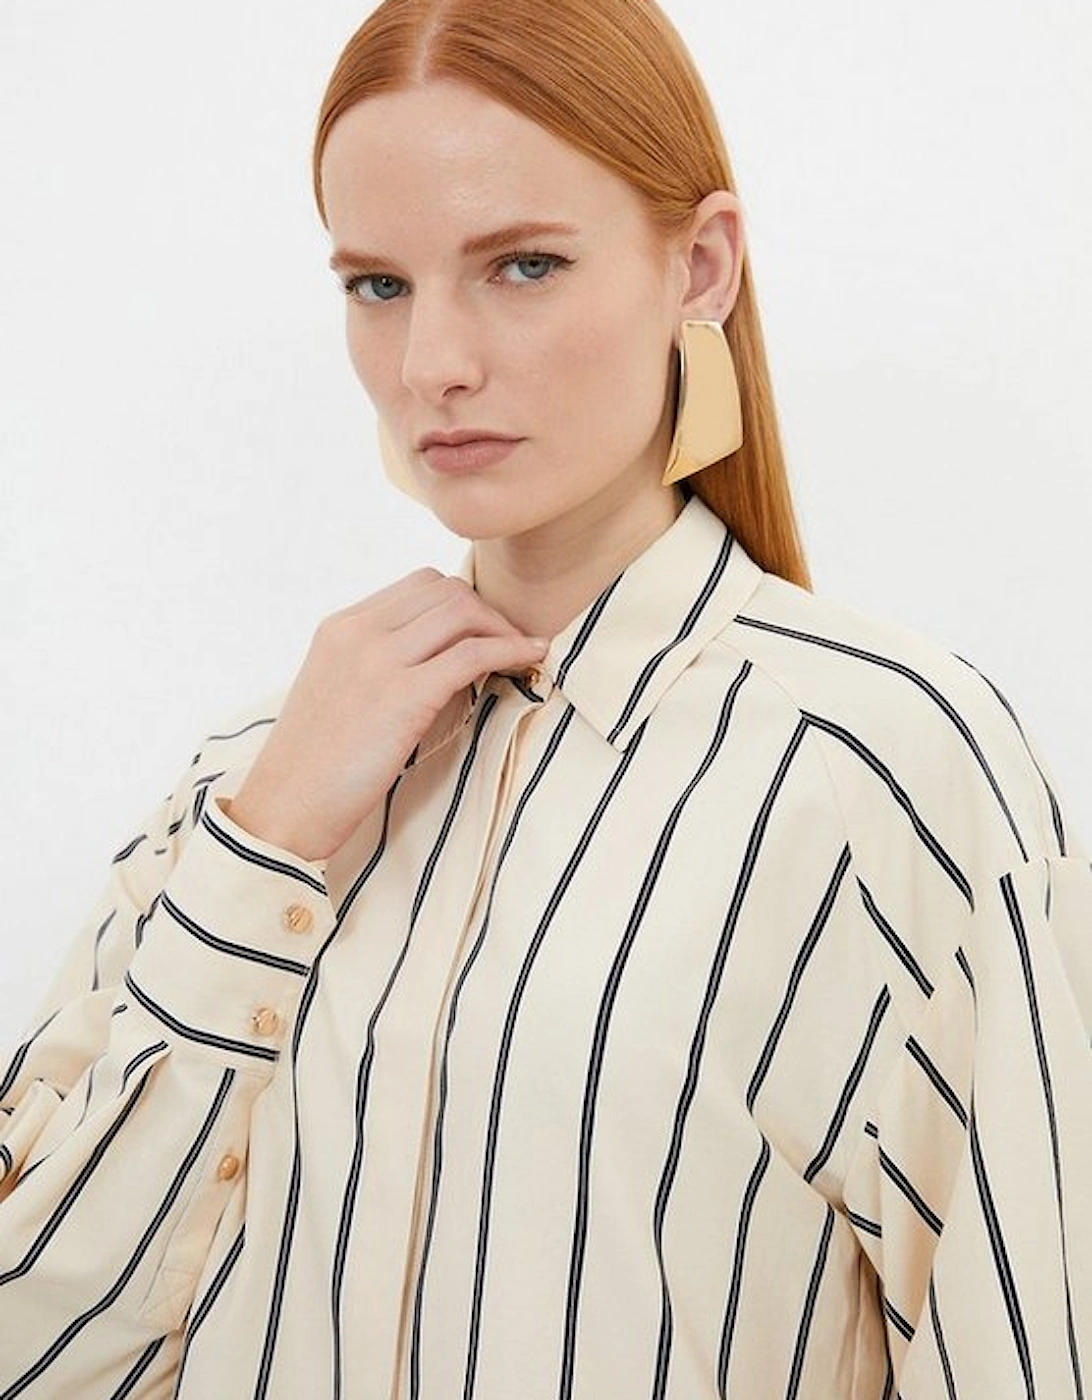 Cotton Stripe Longline Woven Shirt